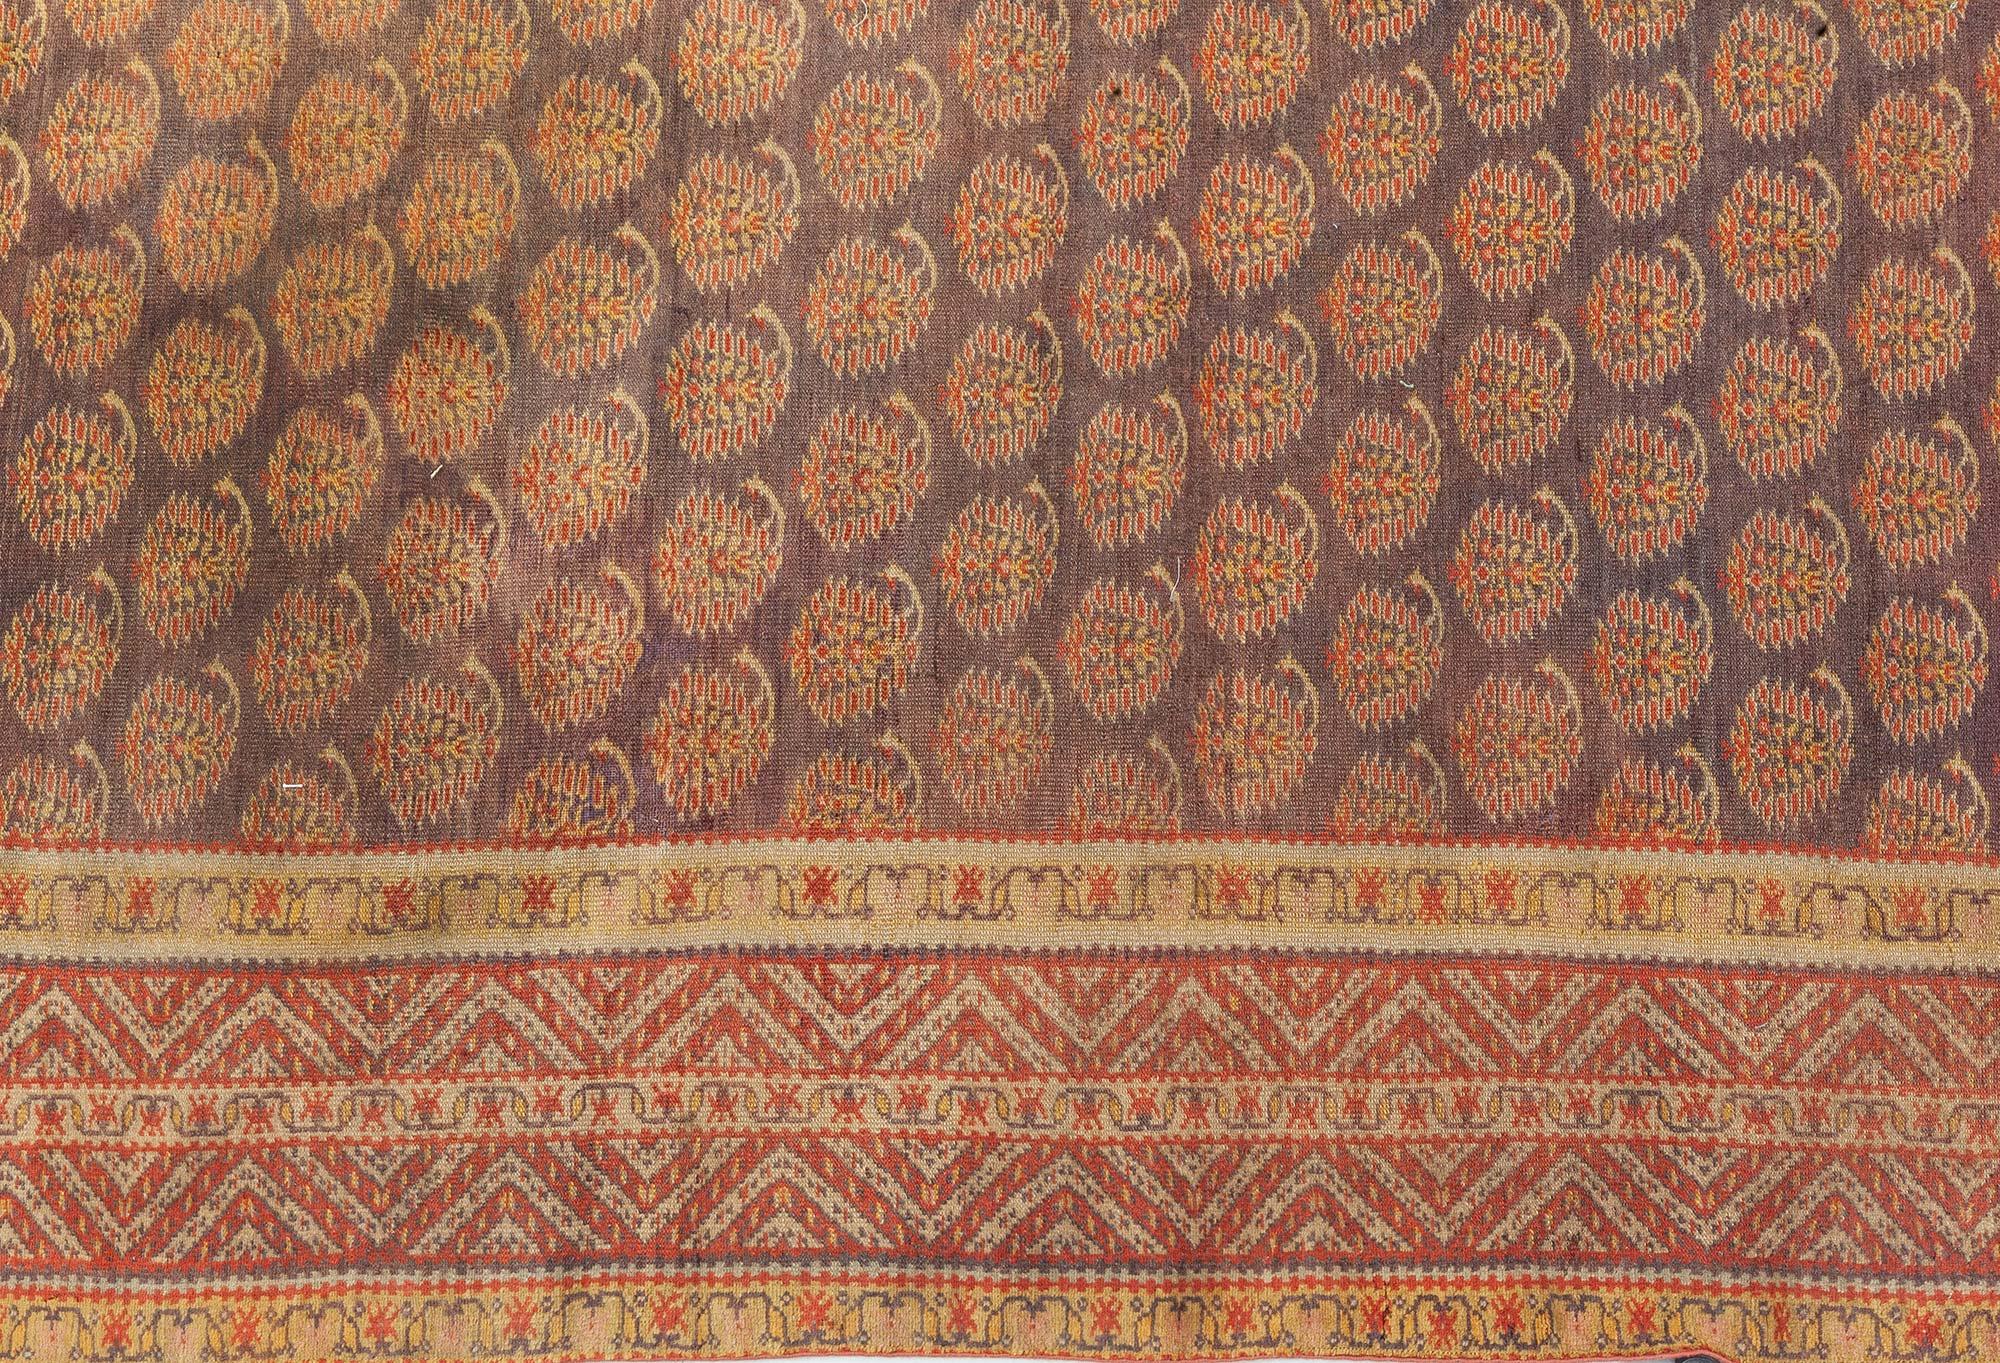 Antique Turkish Sivas rug
Size: 8'8